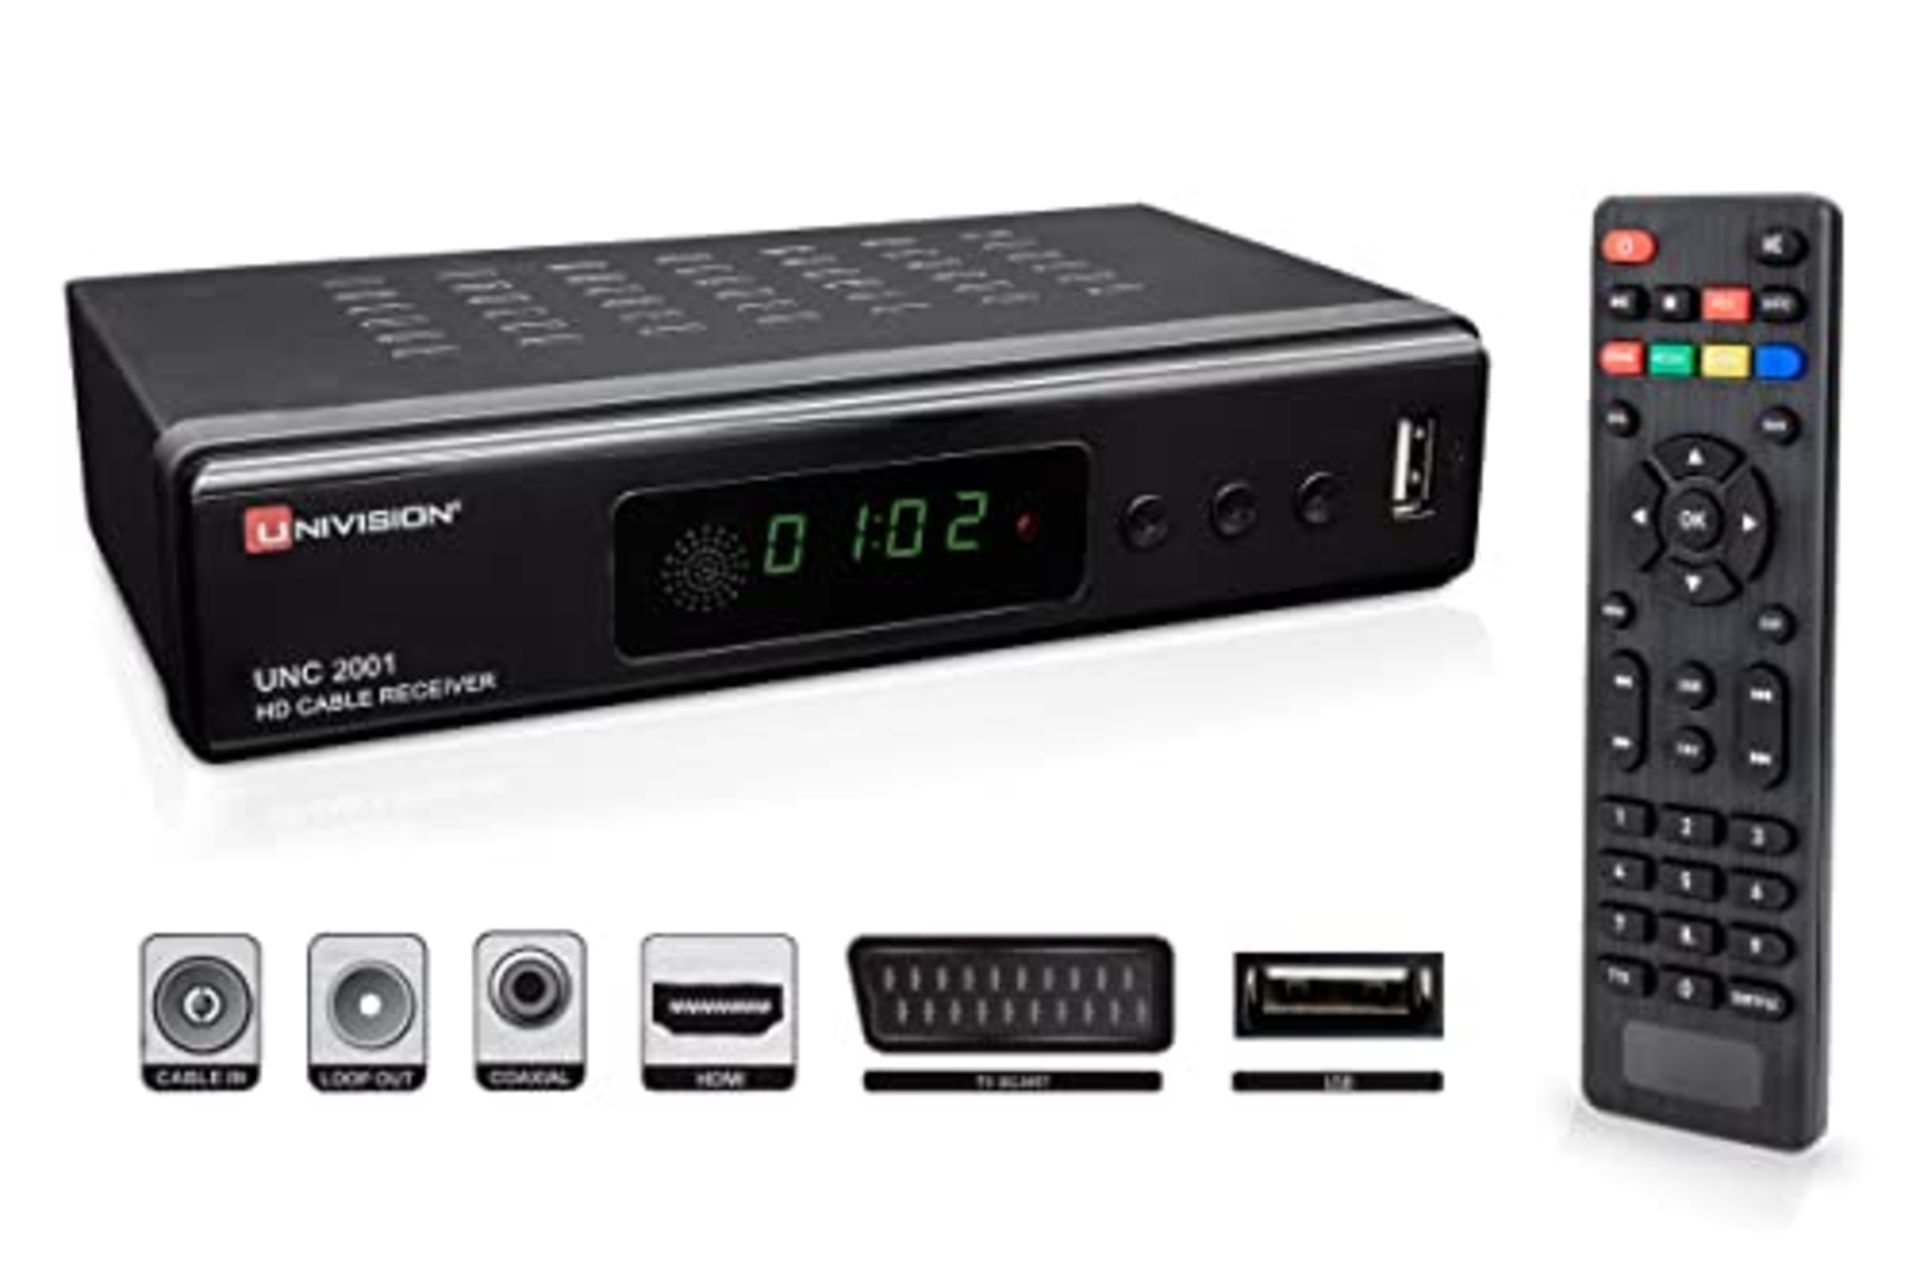 Full UNC2001 HD digitaler Kabel Receiver DVB-C / C2 für alle Kabel-Anbieter mit HDMI